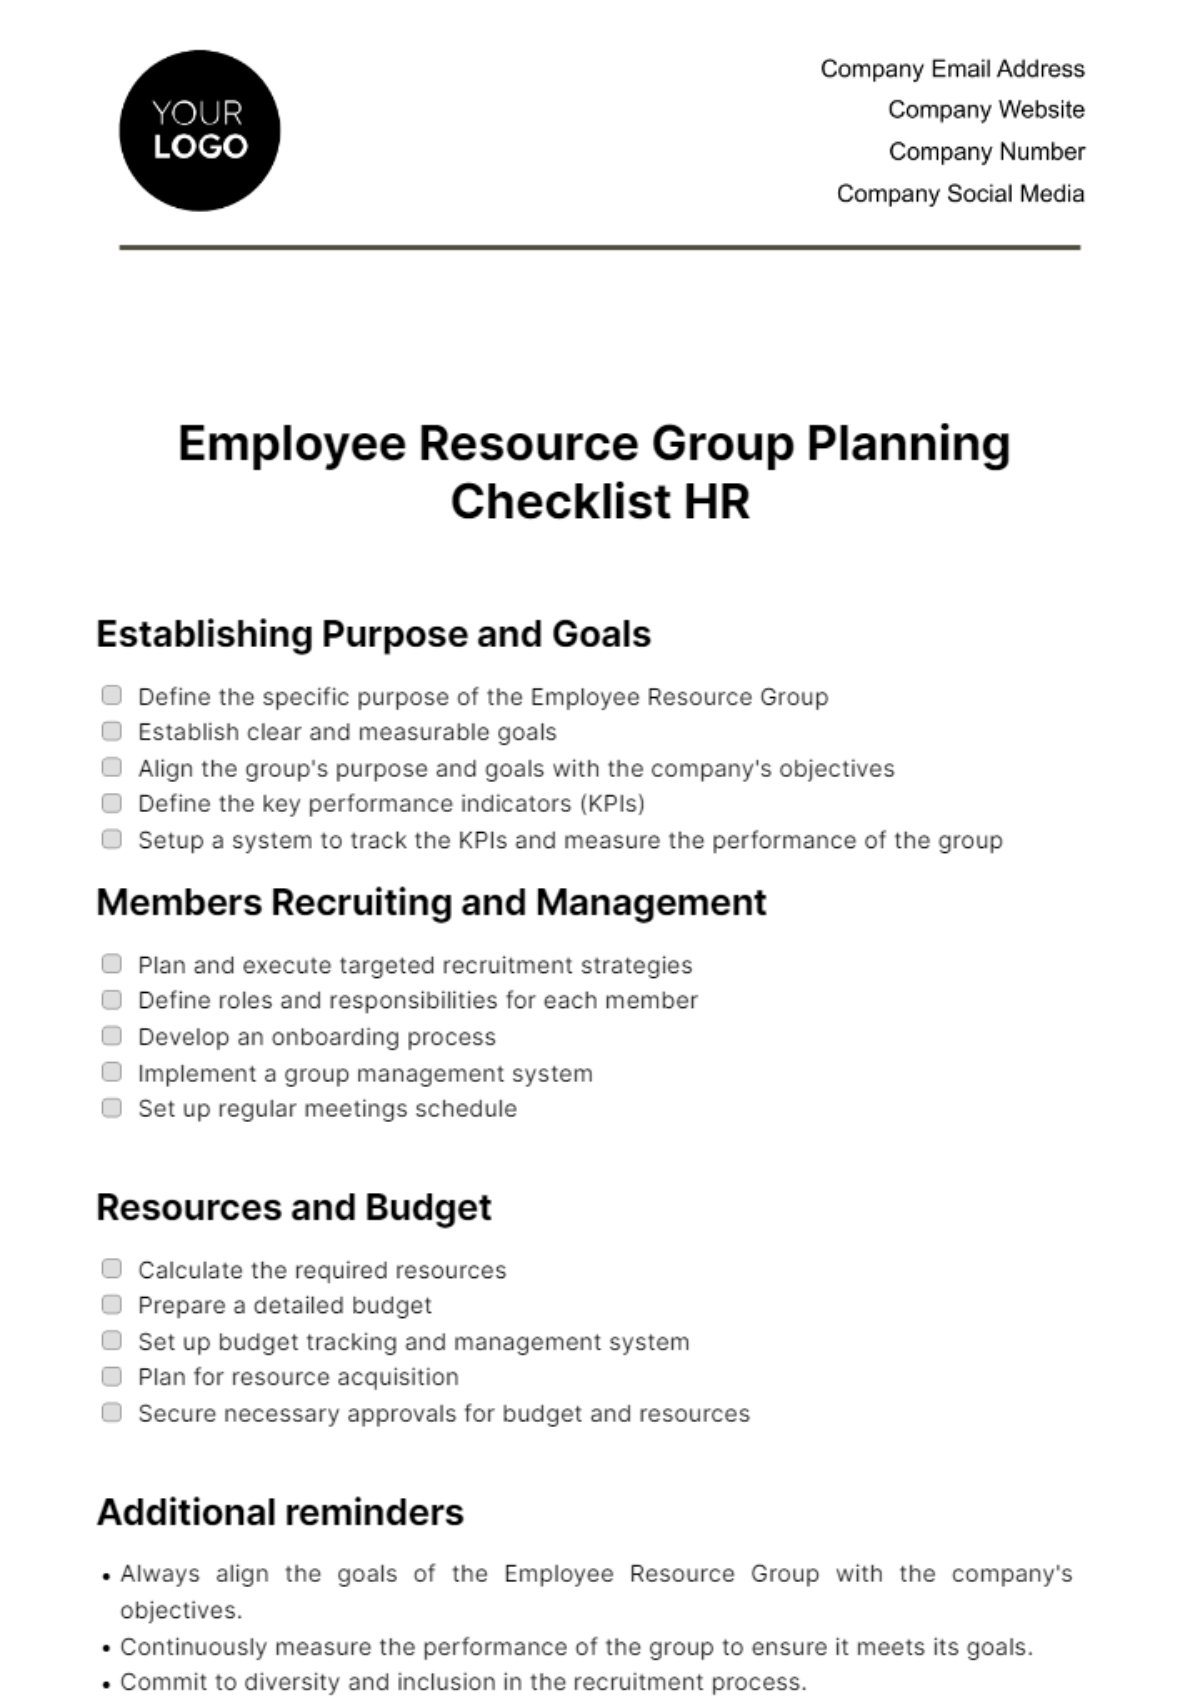 Employee Resource Group Planning Checklist HR Template